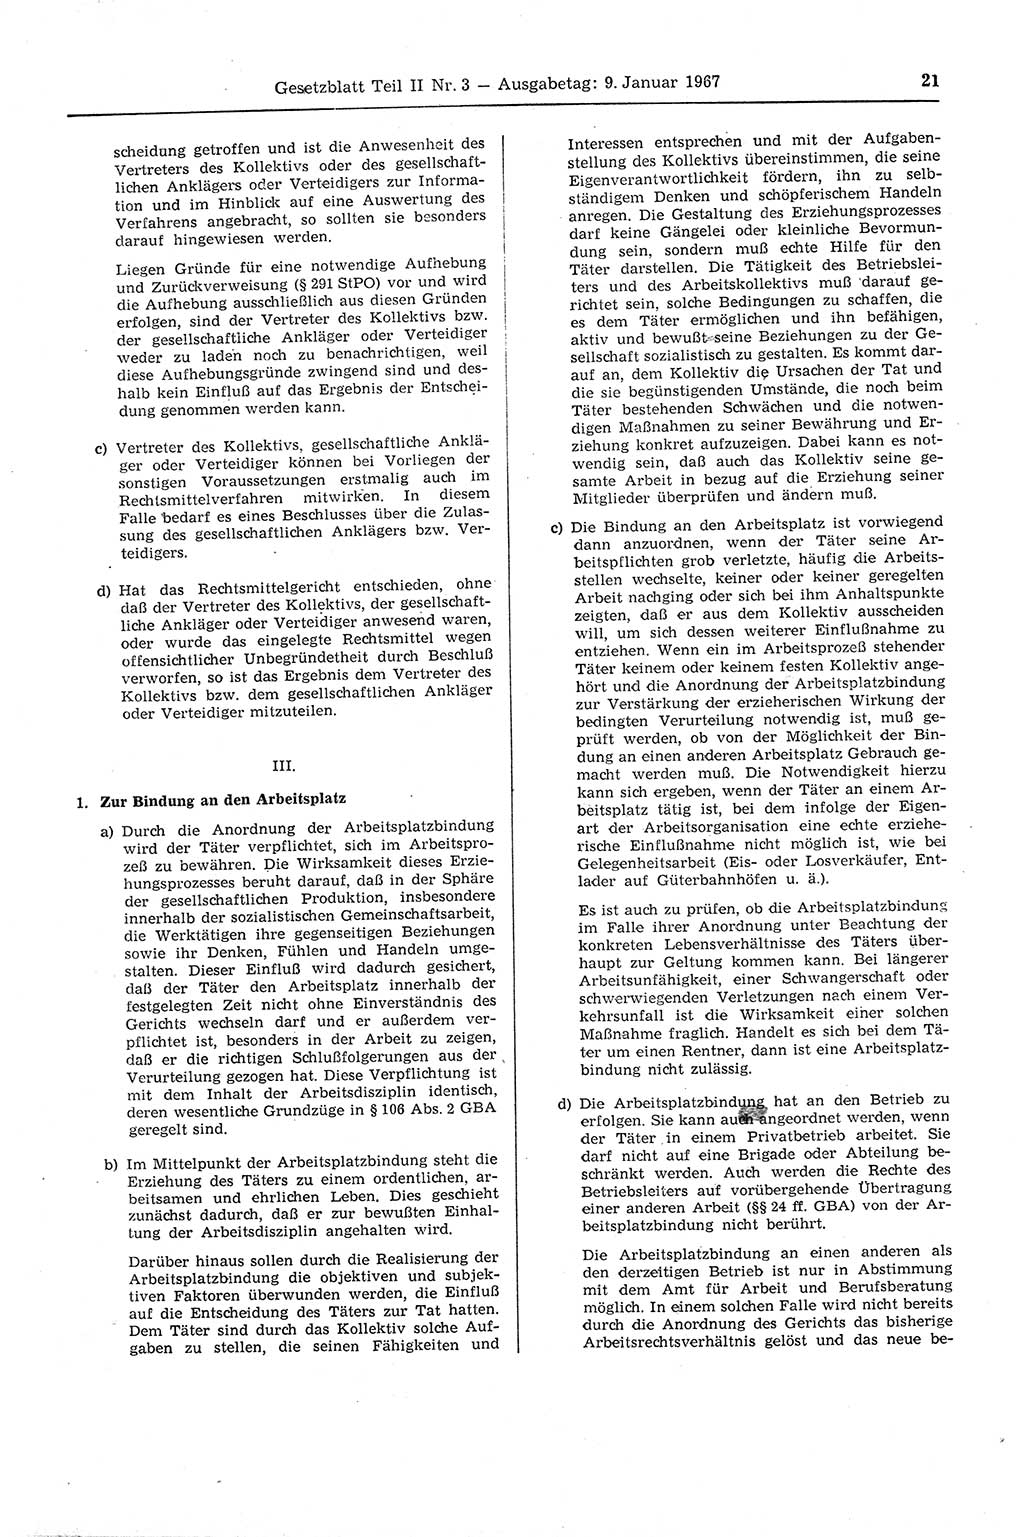 Gesetzblatt (GBl.) der Deutschen Demokratischen Republik (DDR) Teil ⅠⅠ 1967, Seite 21 (GBl. DDR ⅠⅠ 1967, S. 21)